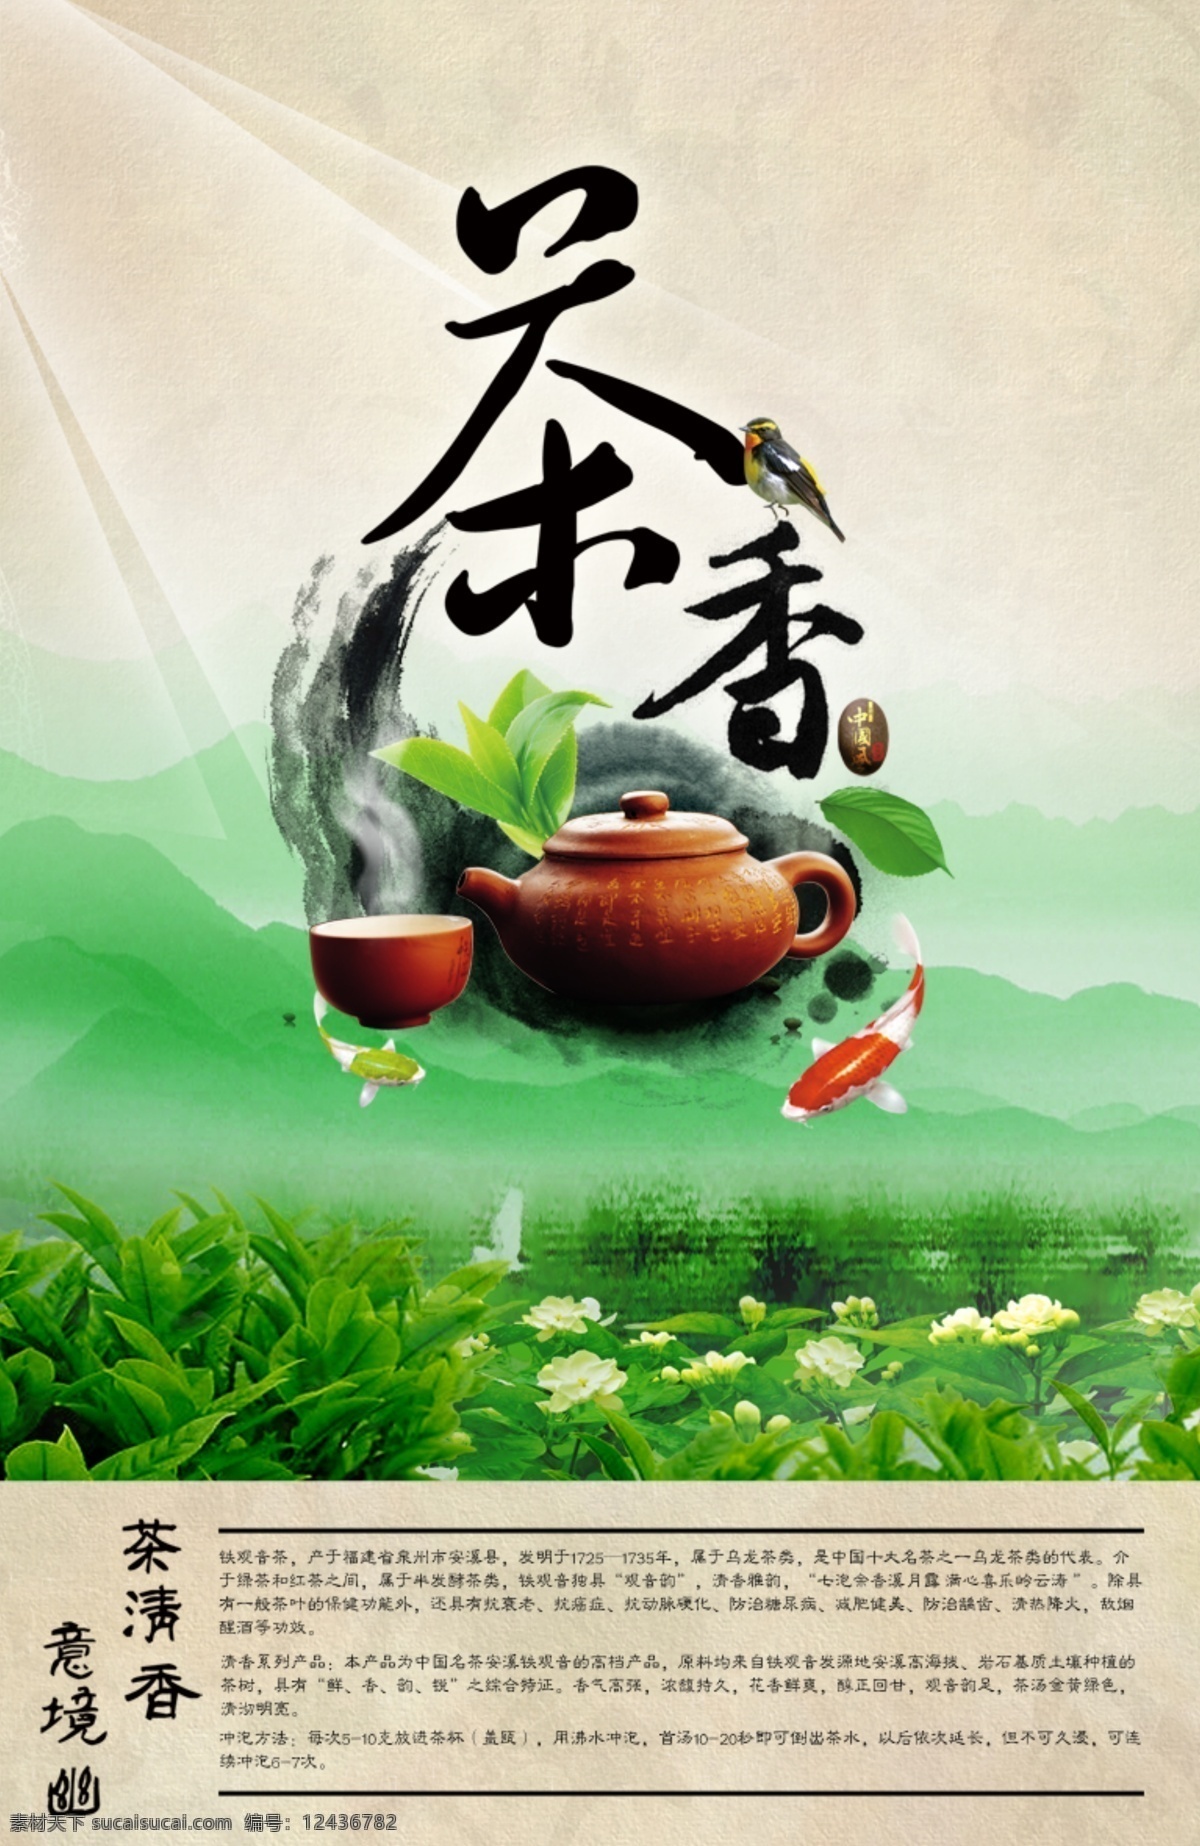 茶叶报纸广告 茶叶 报纸广告 海报 绿色